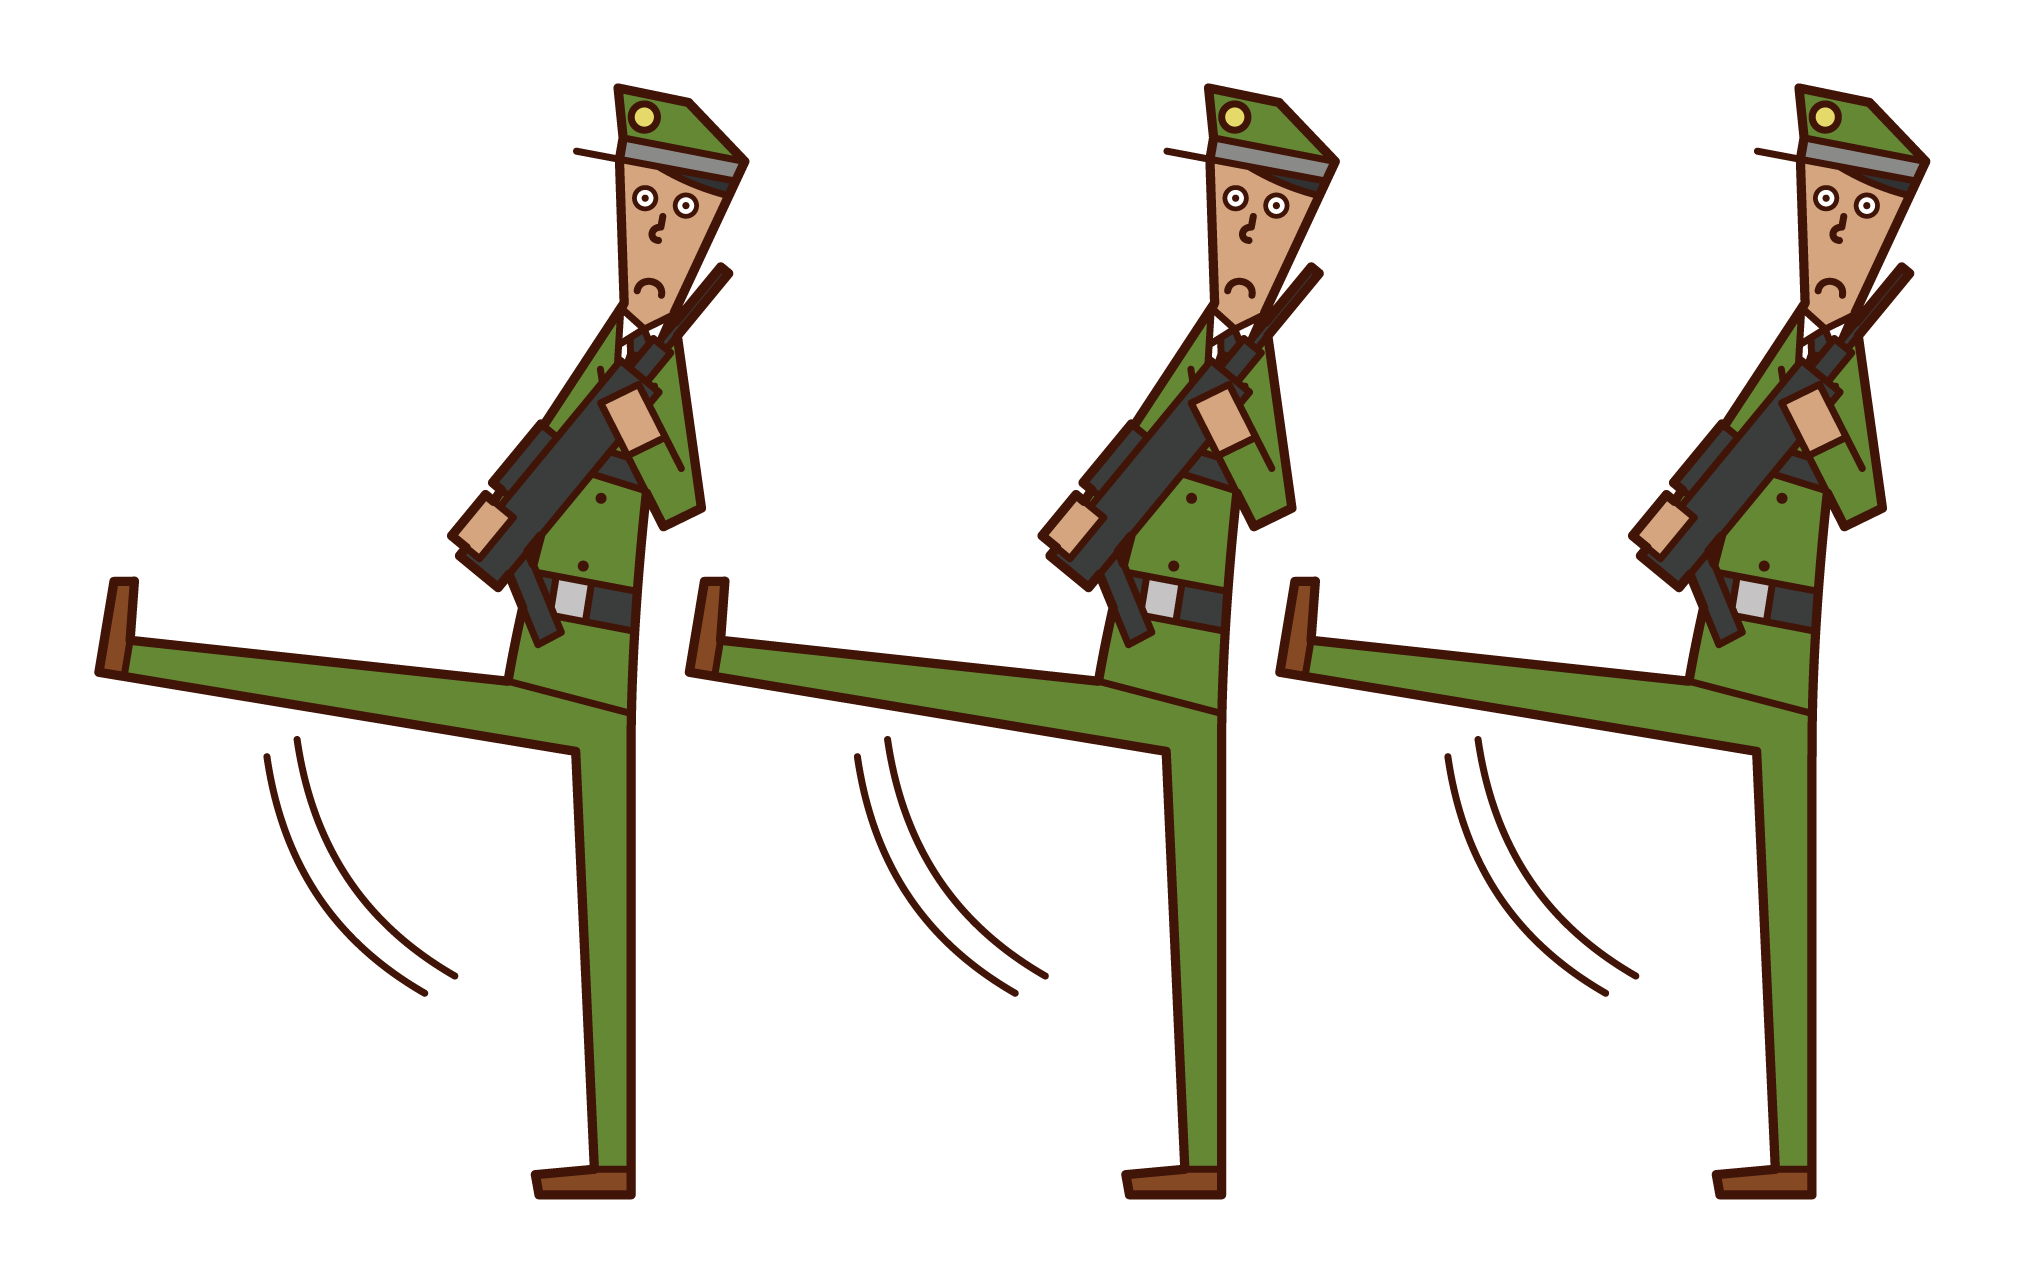 진보적 인 군대와 군인 (남성)의 그림